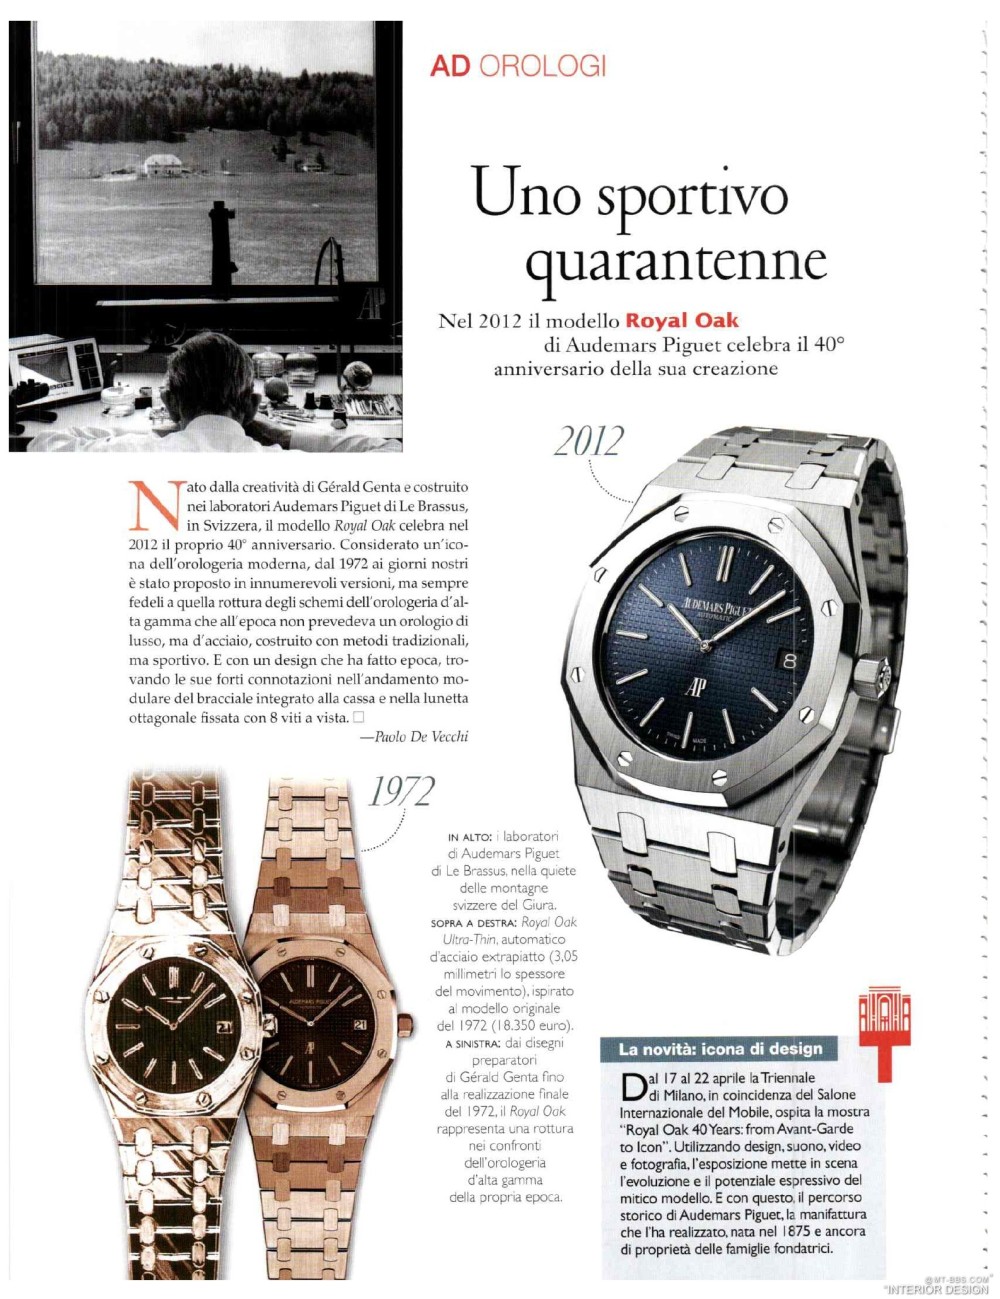 意大利AD 杂志 2012年全年JPG高清版本 全免（上传完毕）_0092.jpg